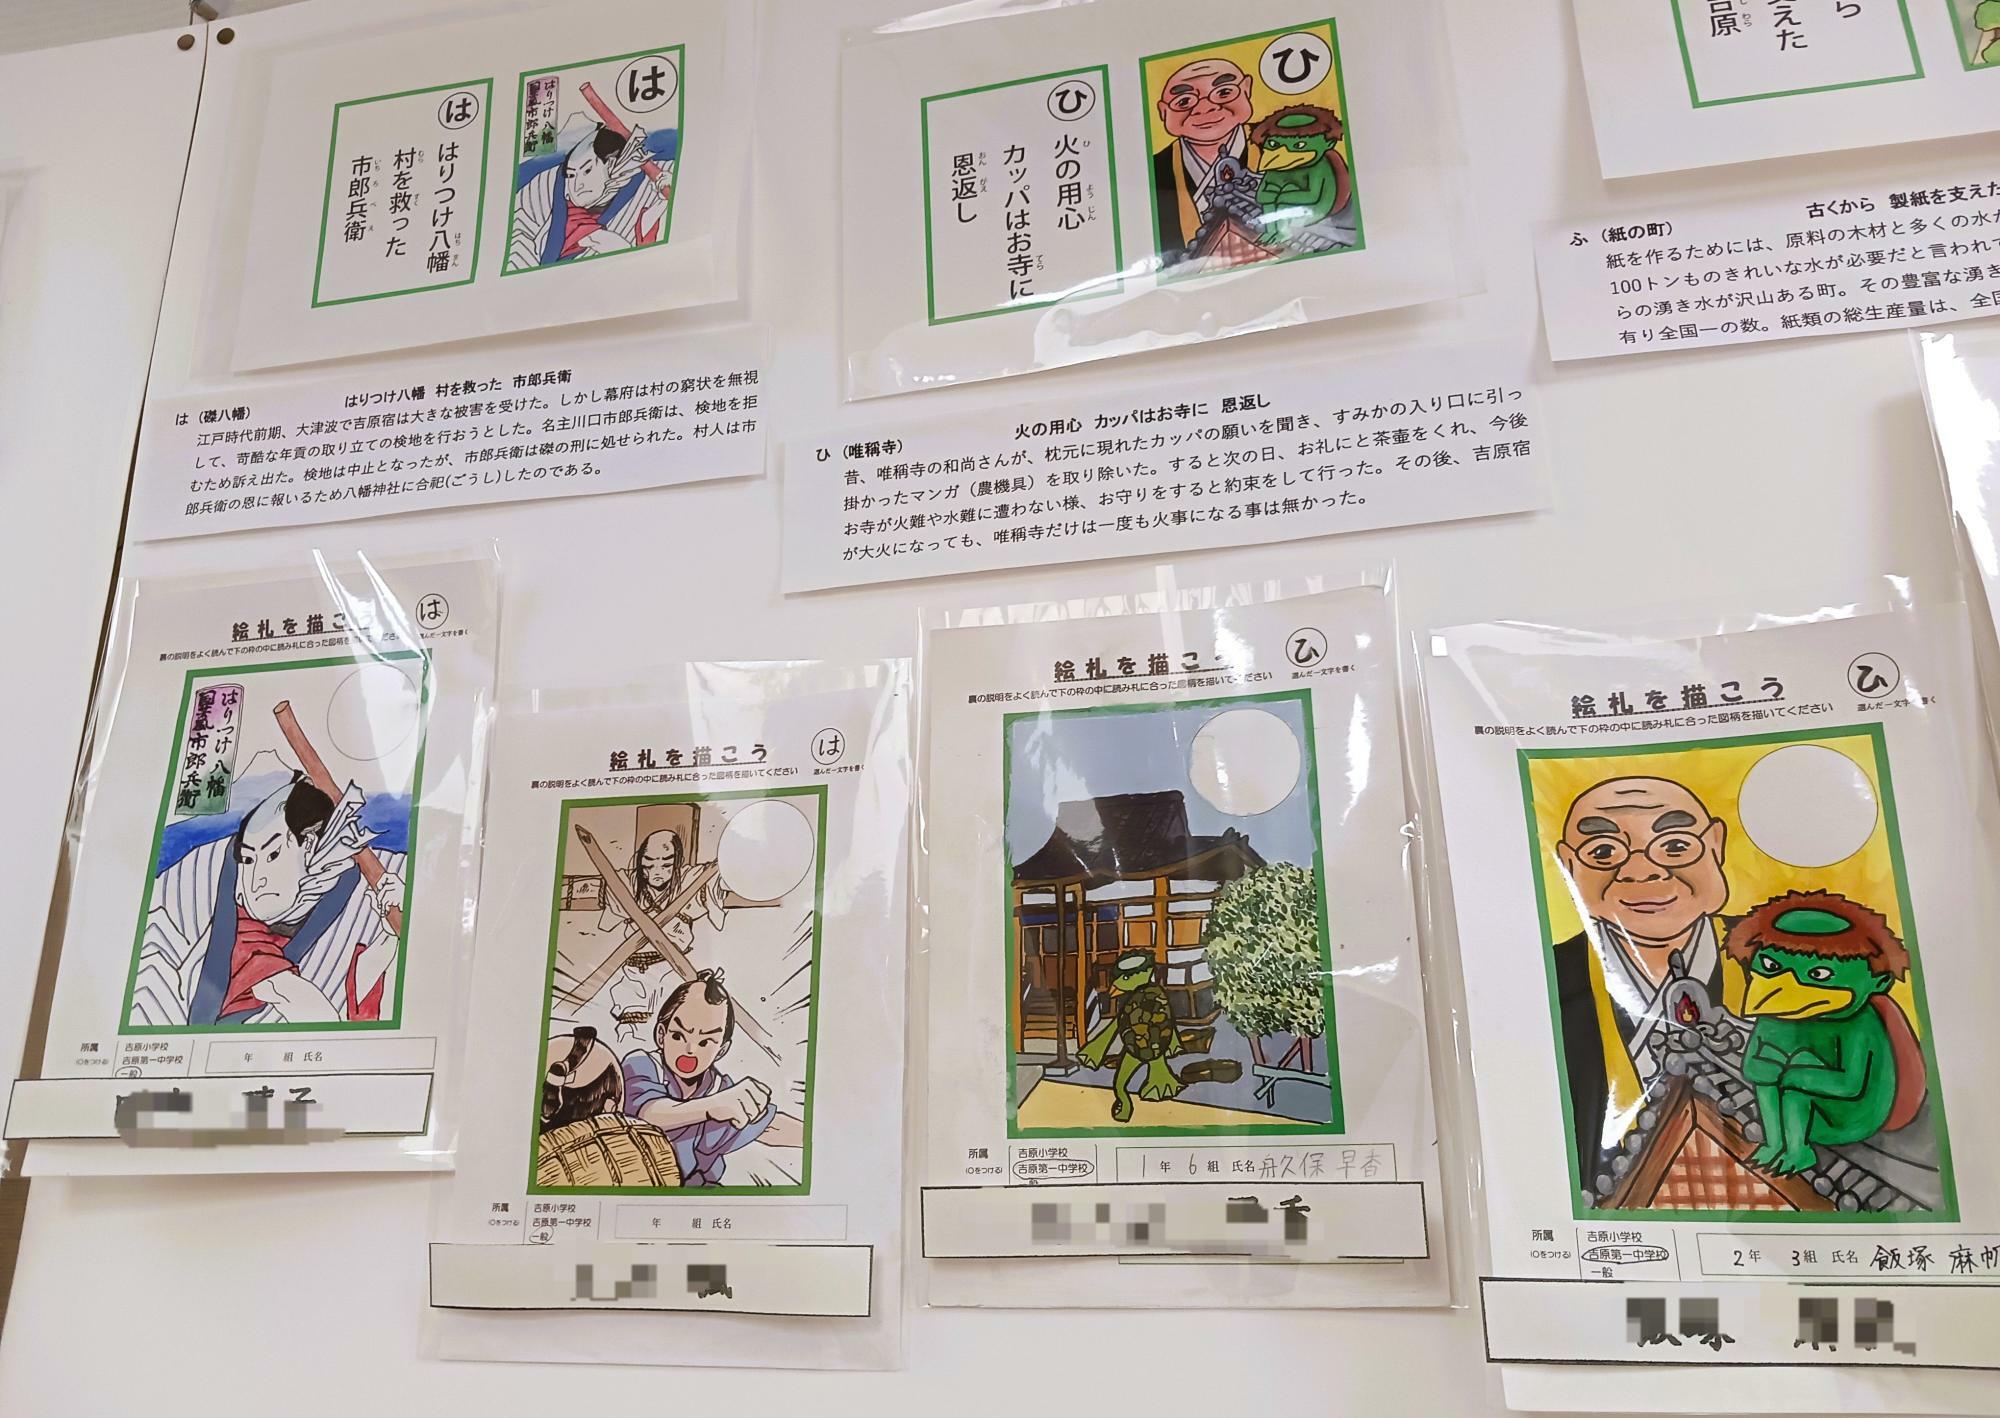 吉原の歴史を知る上でも、読み札絵札を合わせて見るととてもおもしろいですね